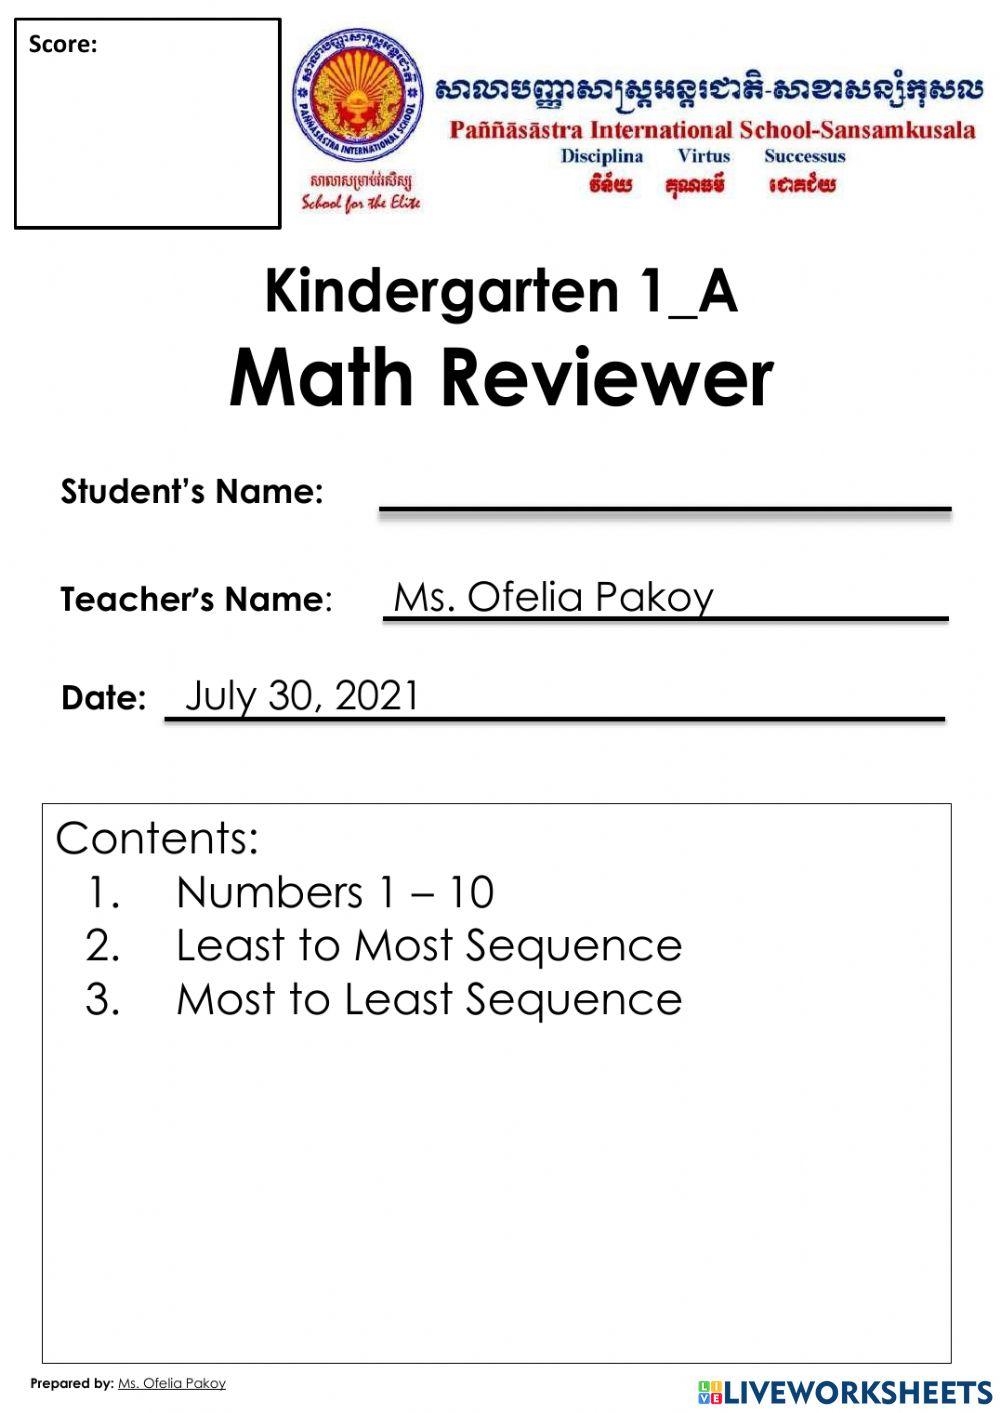 Math reviewer